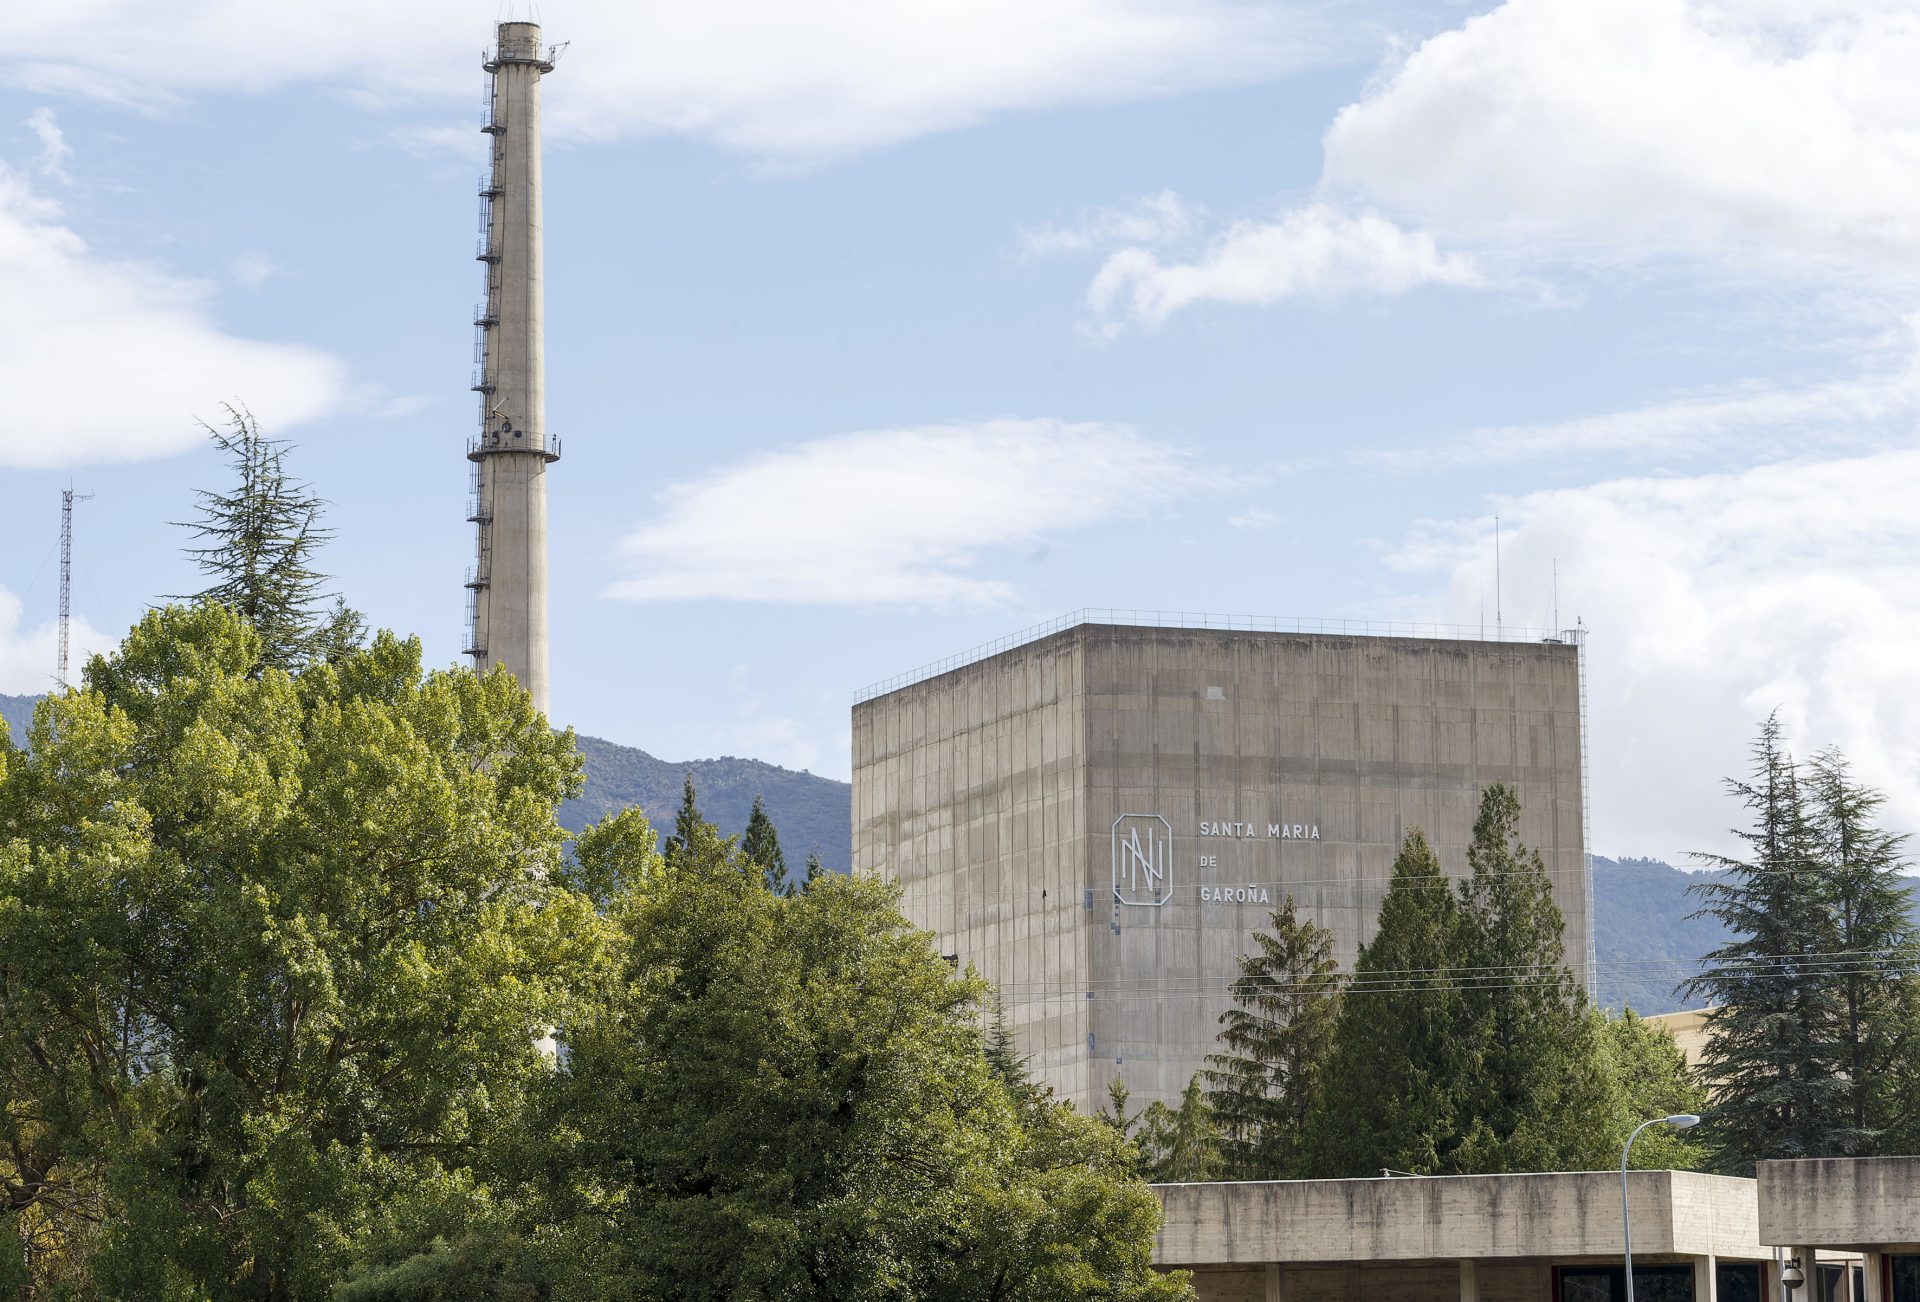 Vista de la central nuclear de Santa María de Garoña. Archivo EFE/Santi Otero